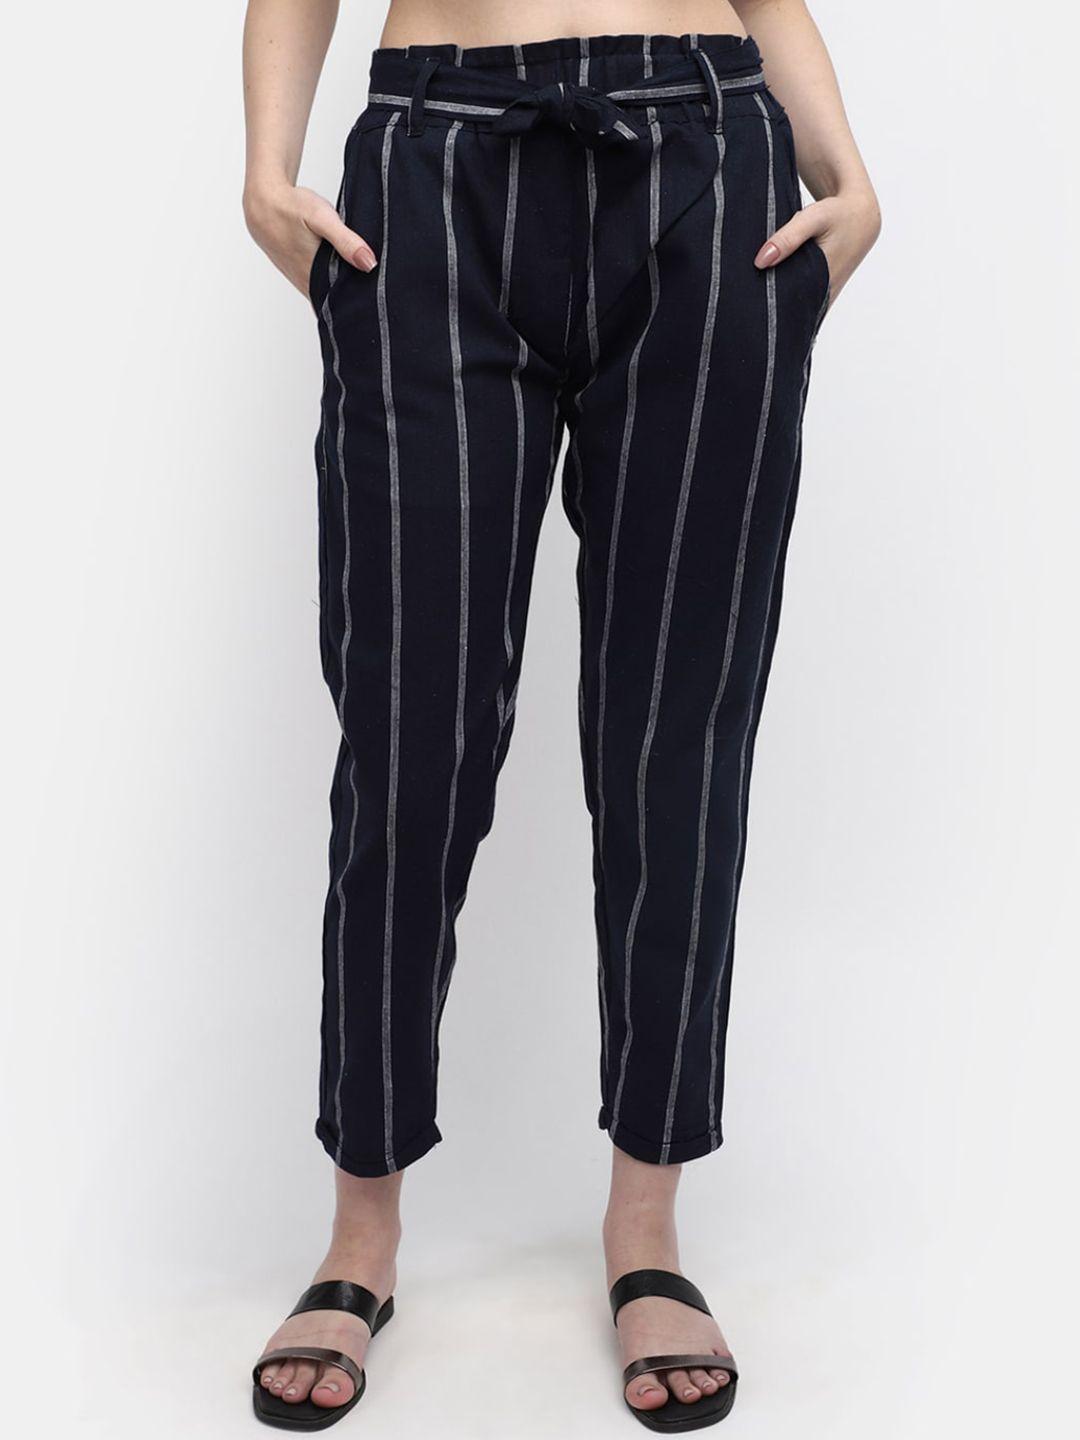 v-mart women striped regular fit regular trousers